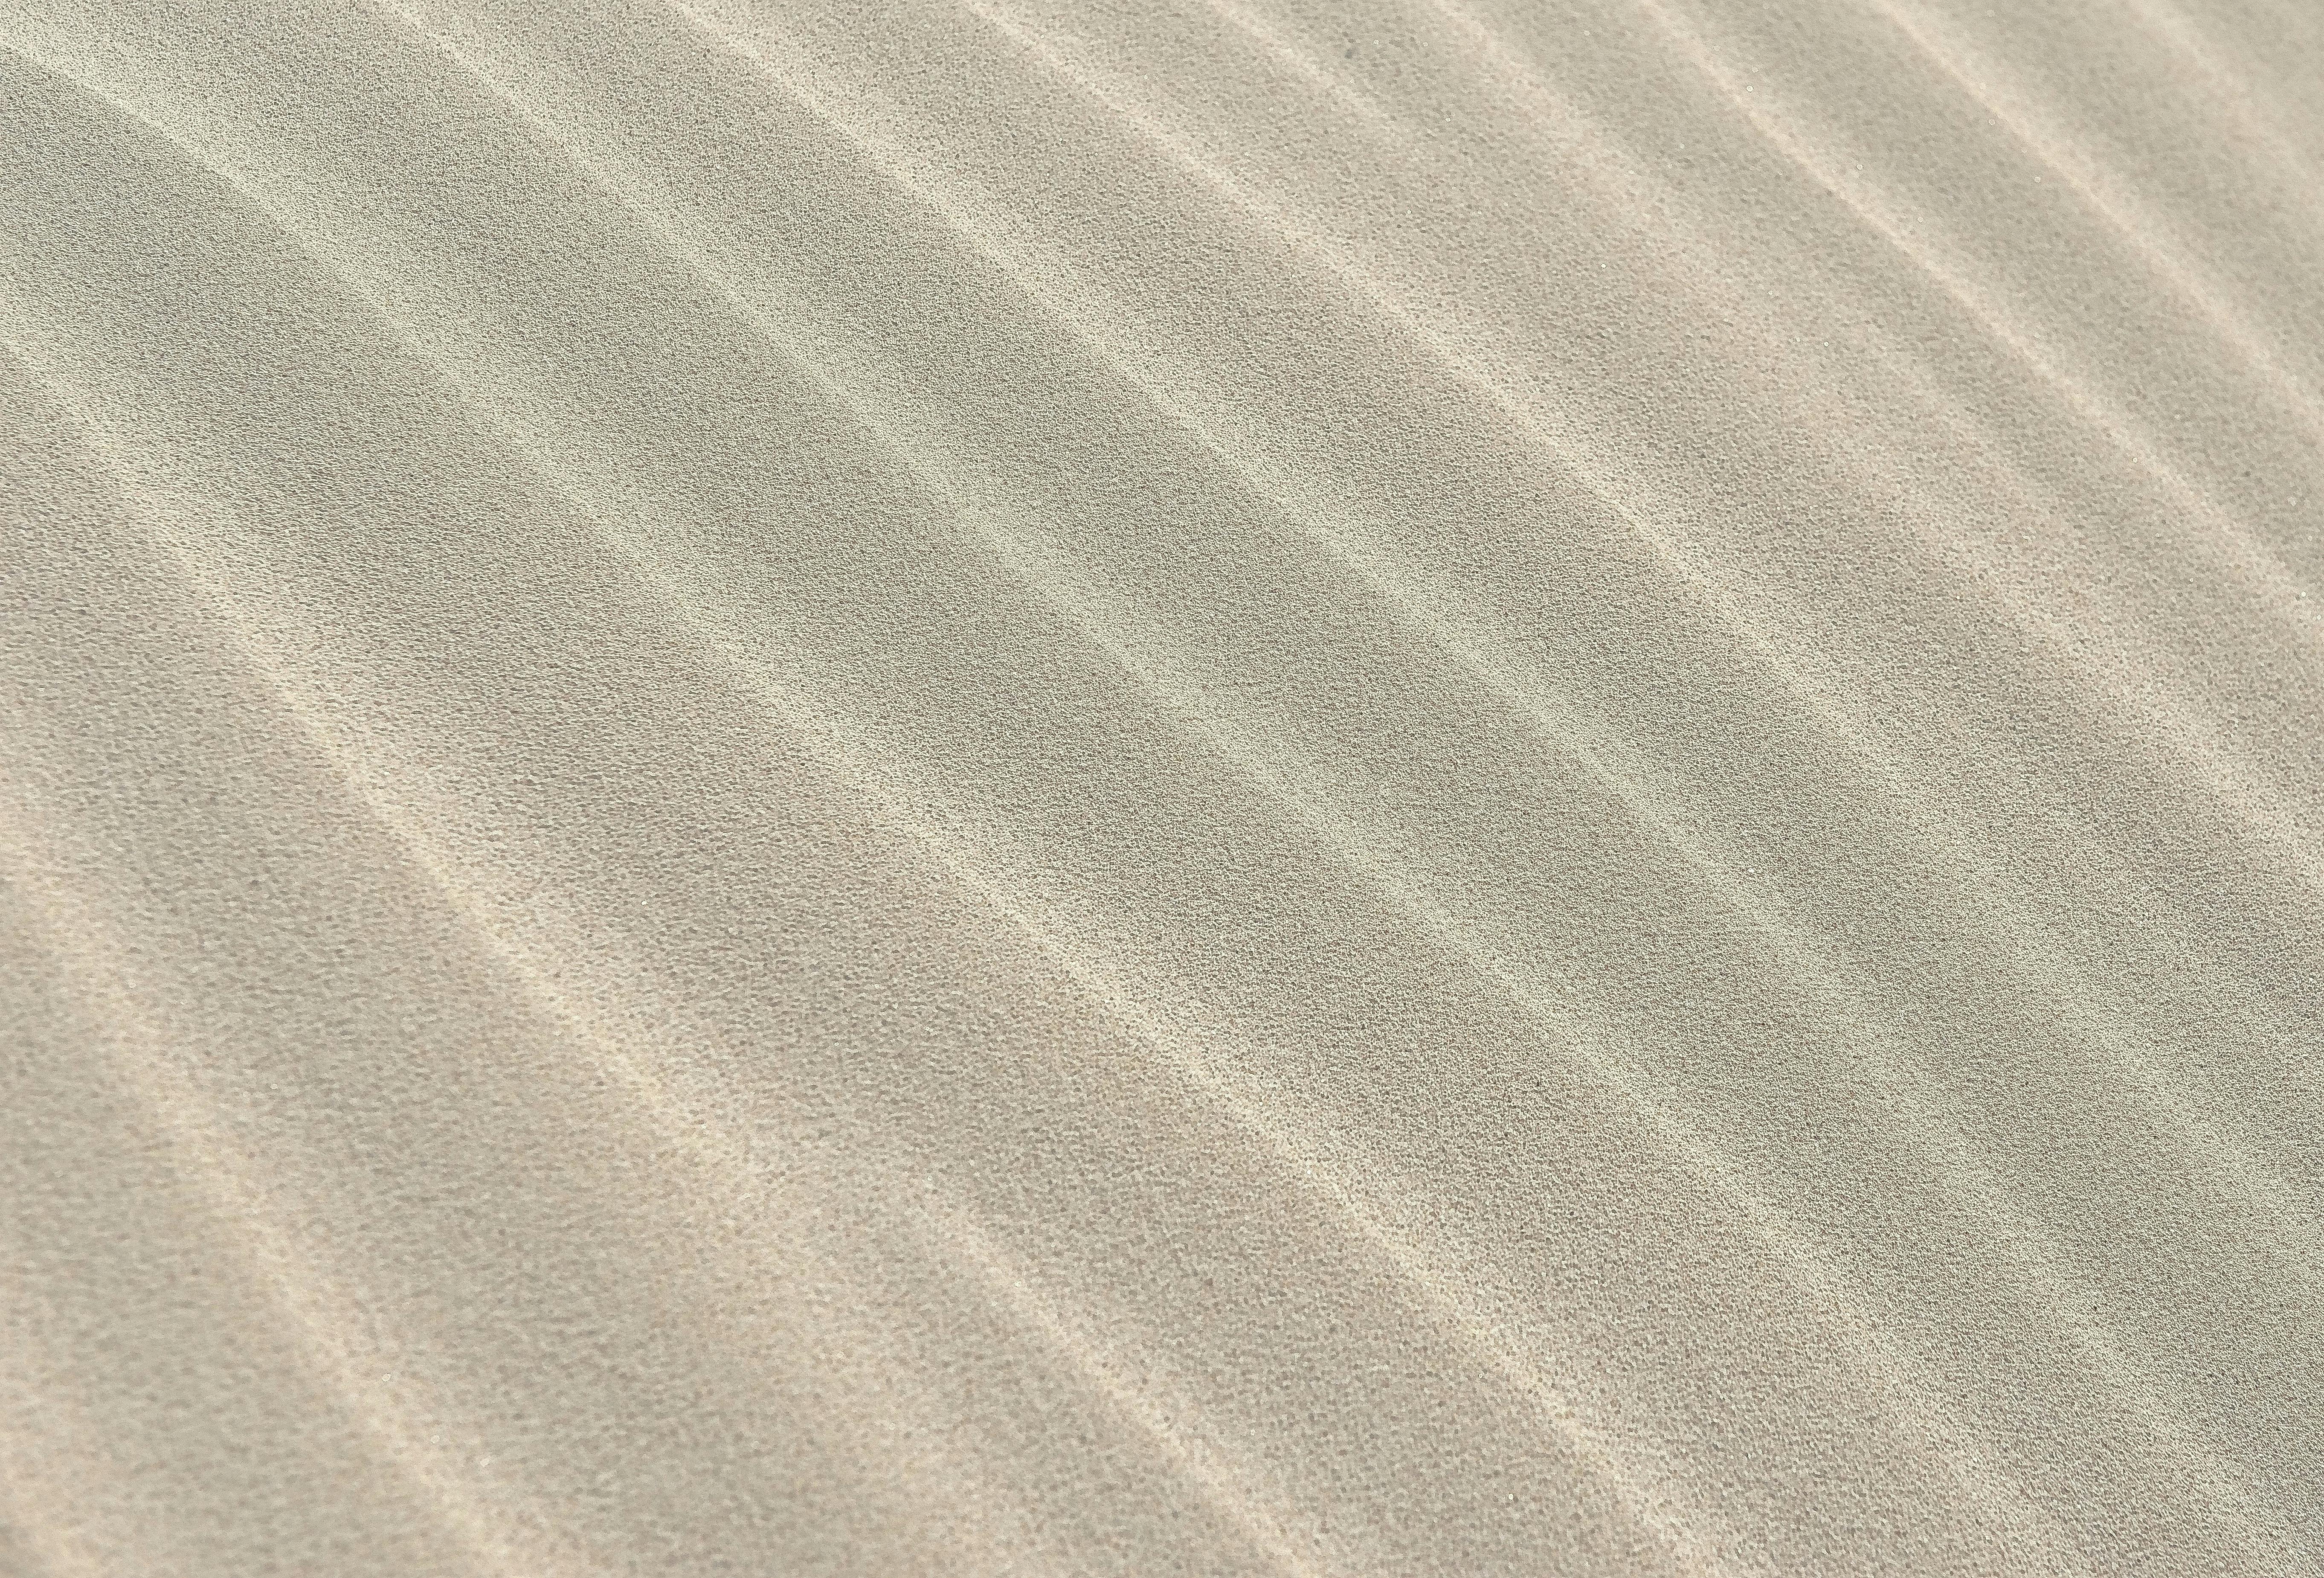 ์Nature beach sand texture Stock Photo